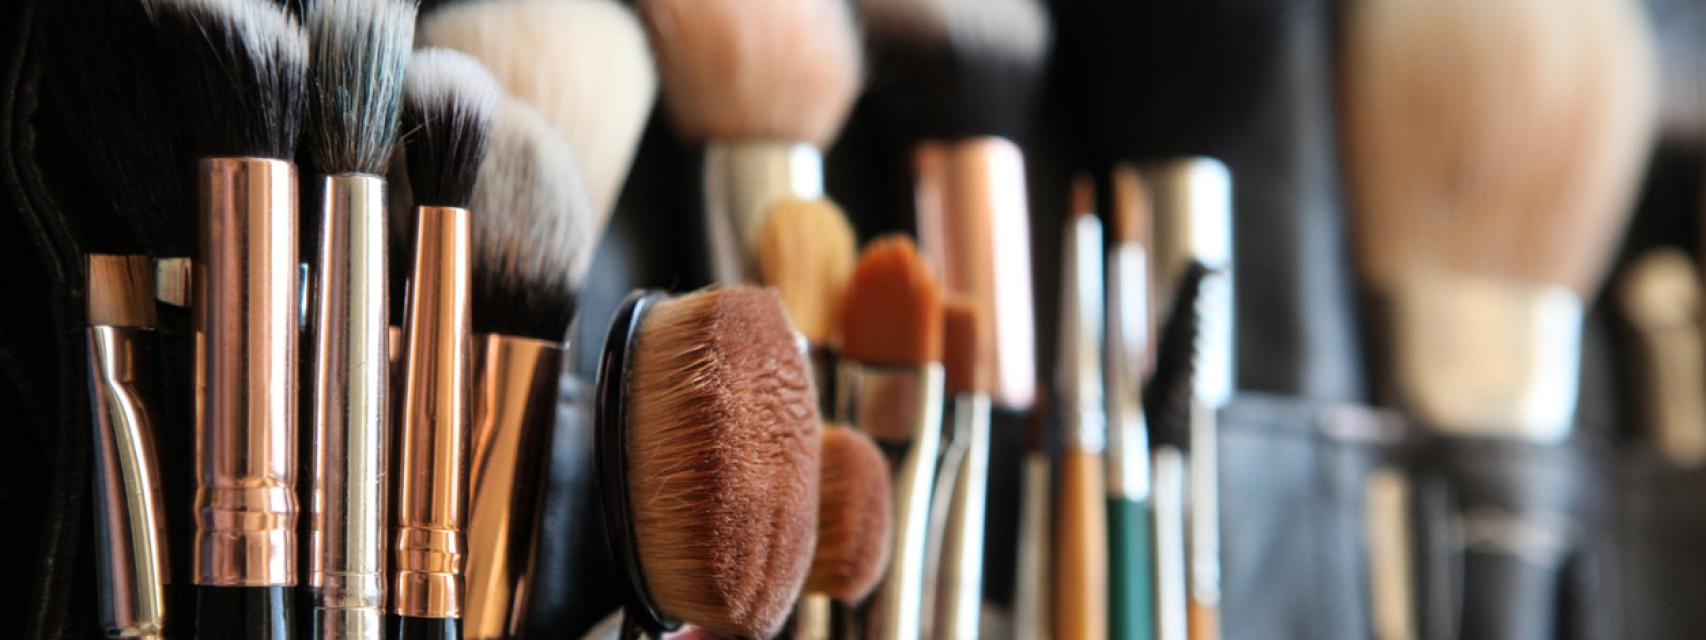 Guía de brochas y pinceles de maquillaje: cuál elegir para cada